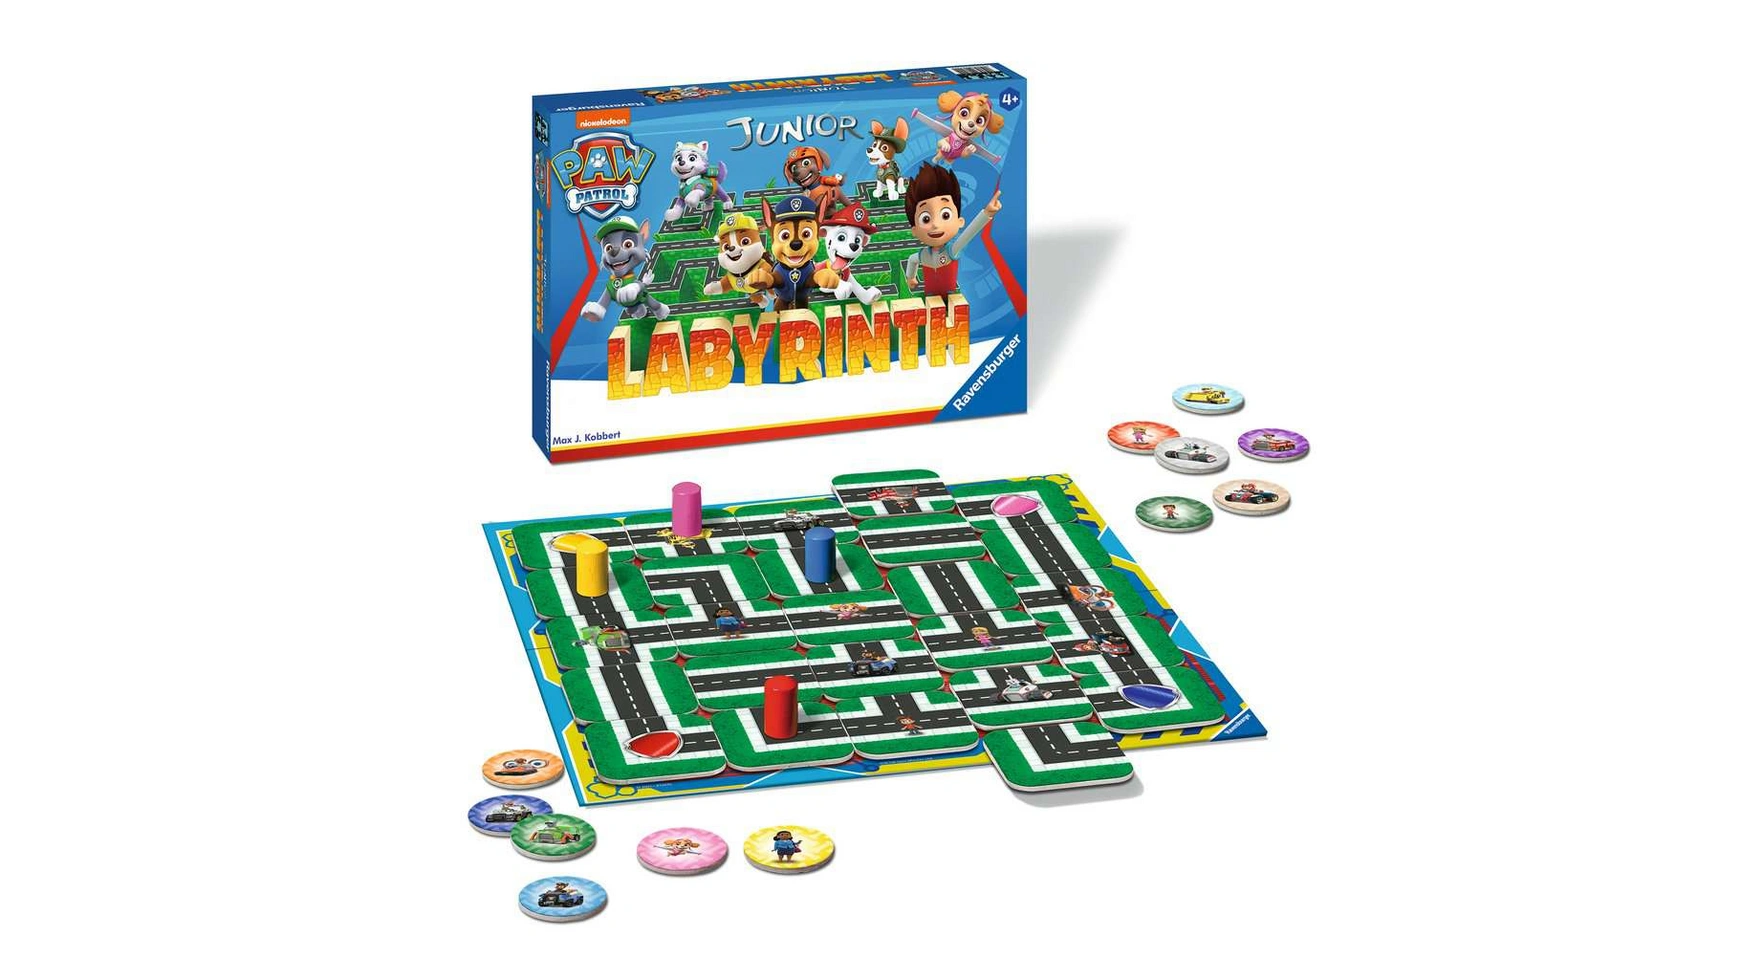 Ravensburger Spiele Paw Patrol Junior Labyrinth, известная настольная игра от Ravensburger в детской версии